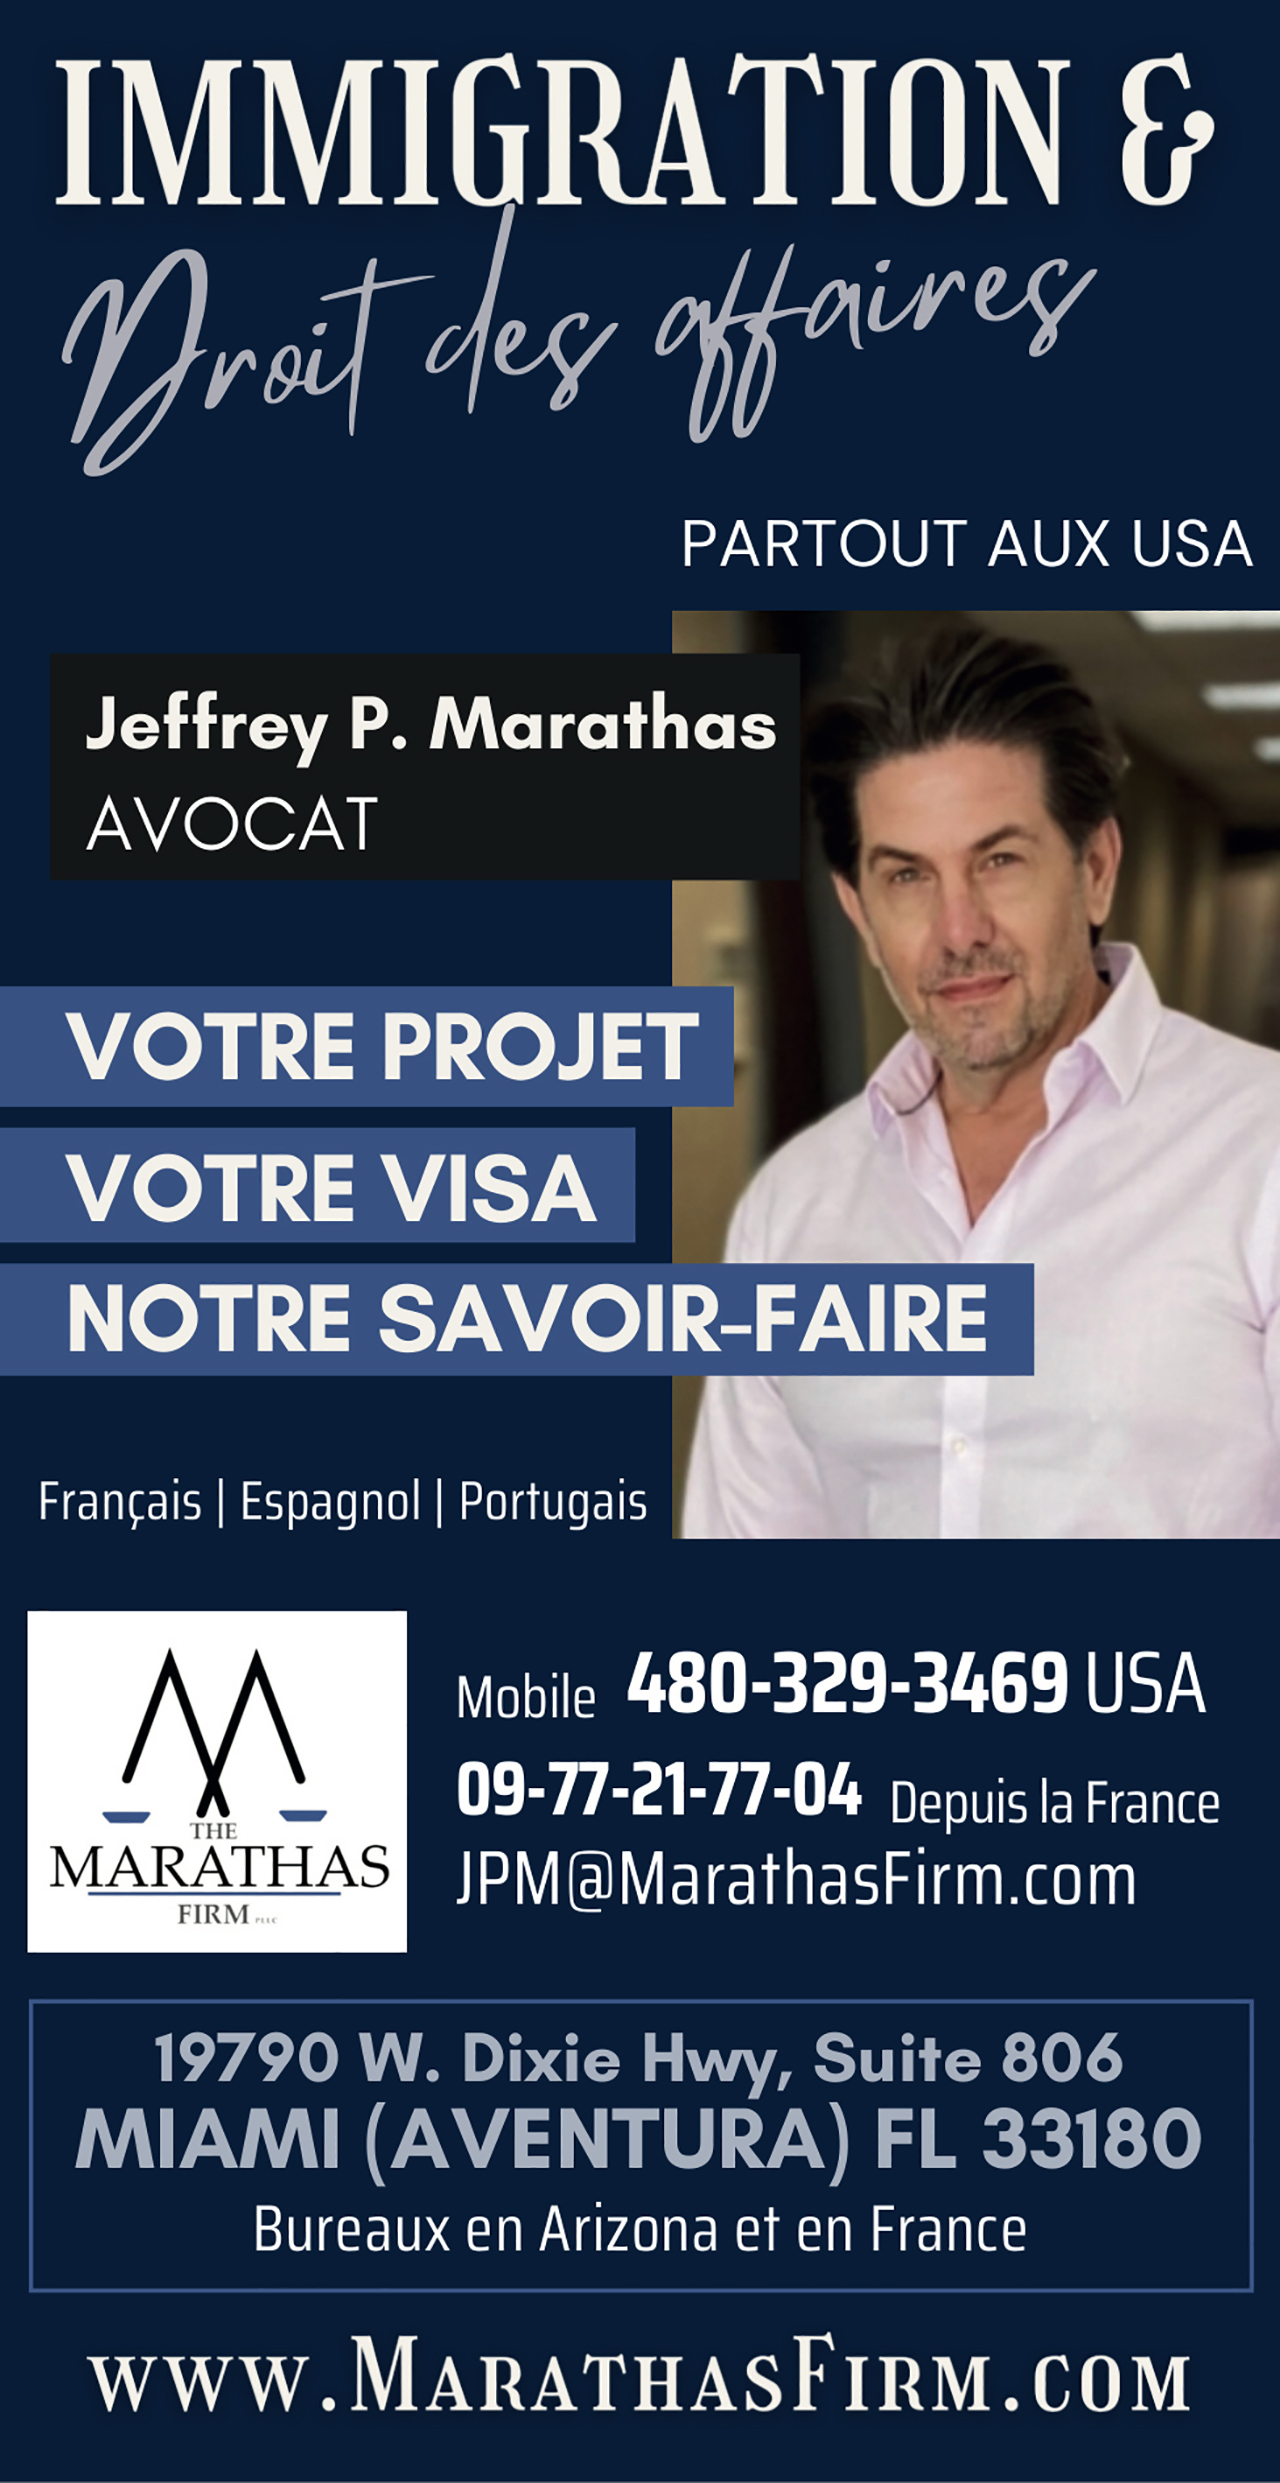 Jeffrey Marathas avocat d'immigration et d'affaires aux Etats-Unis